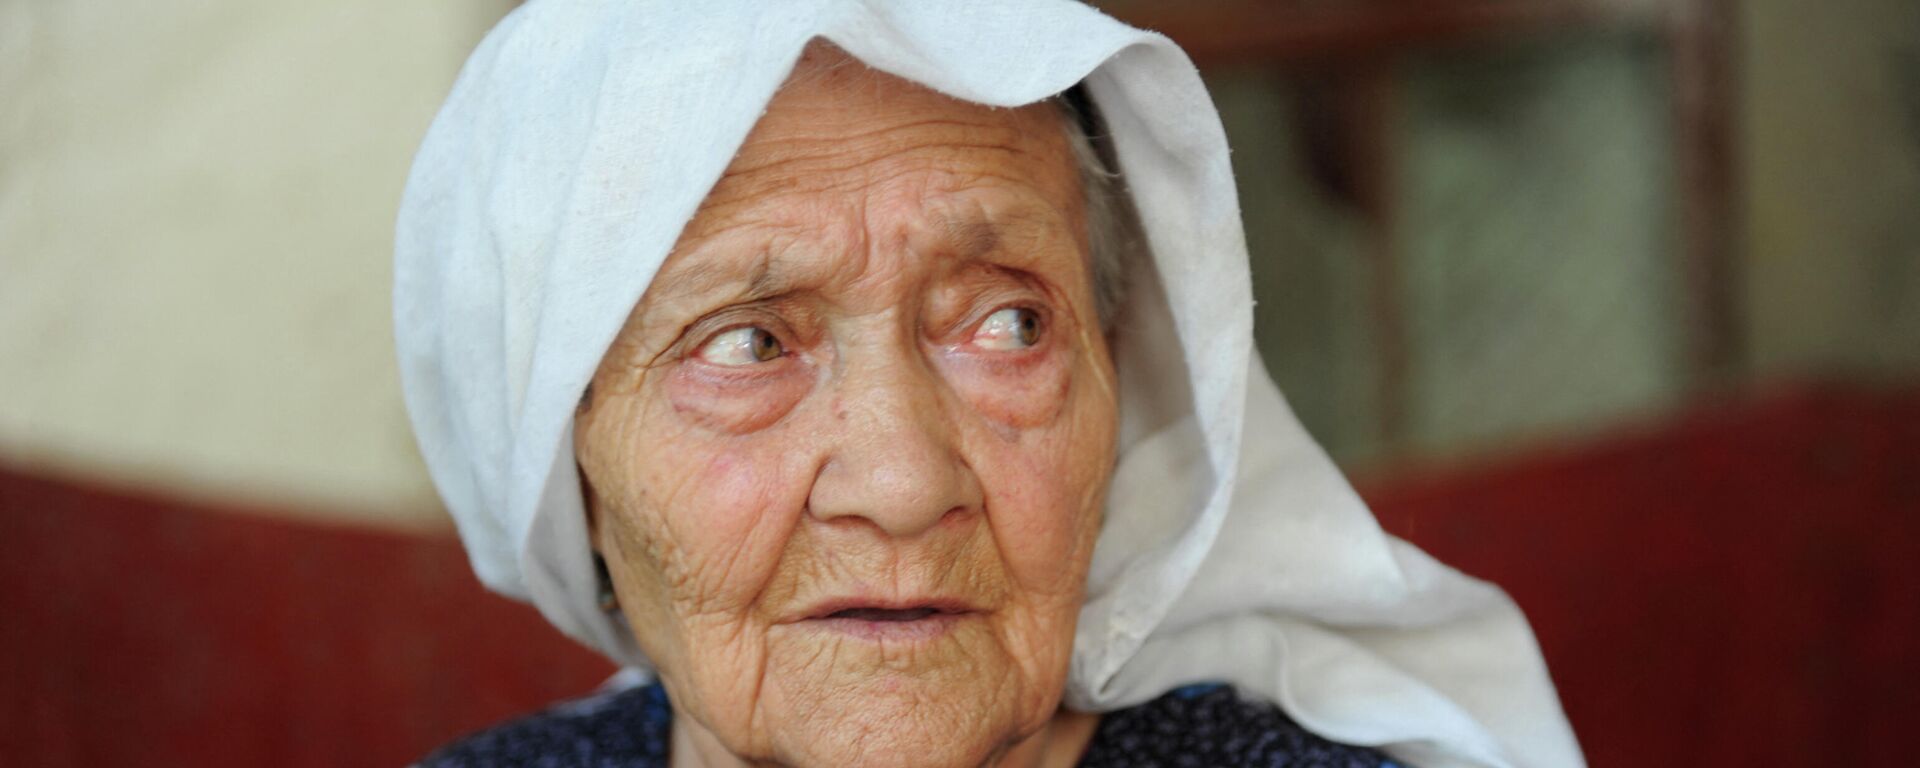 Alimihan Seyiti, reconocida como la ciudadana más longeva de China, en su casa, en la prefectura de Kasgar, la región autónoma de Xinjiang, el 16 de agosto de 2013 - Sputnik Mundo, 1920, 18.12.2021